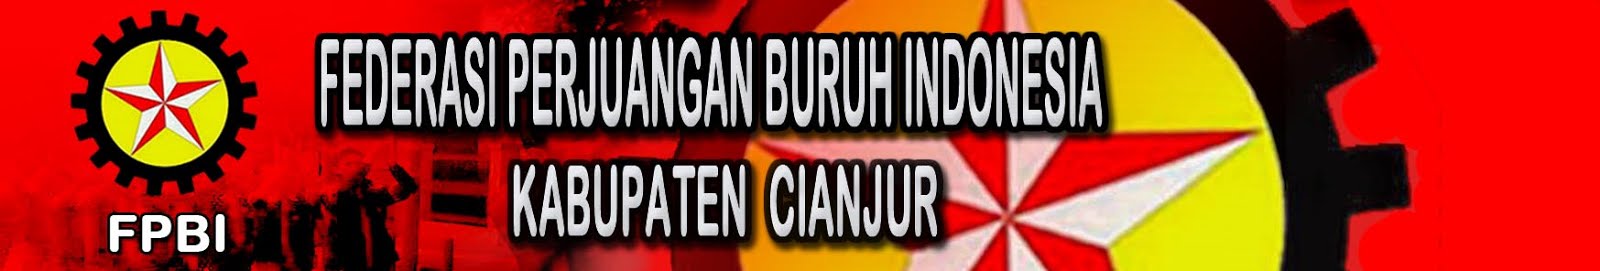 Federasi Perjuangan Buruh Indonesia Kab.Cianjur